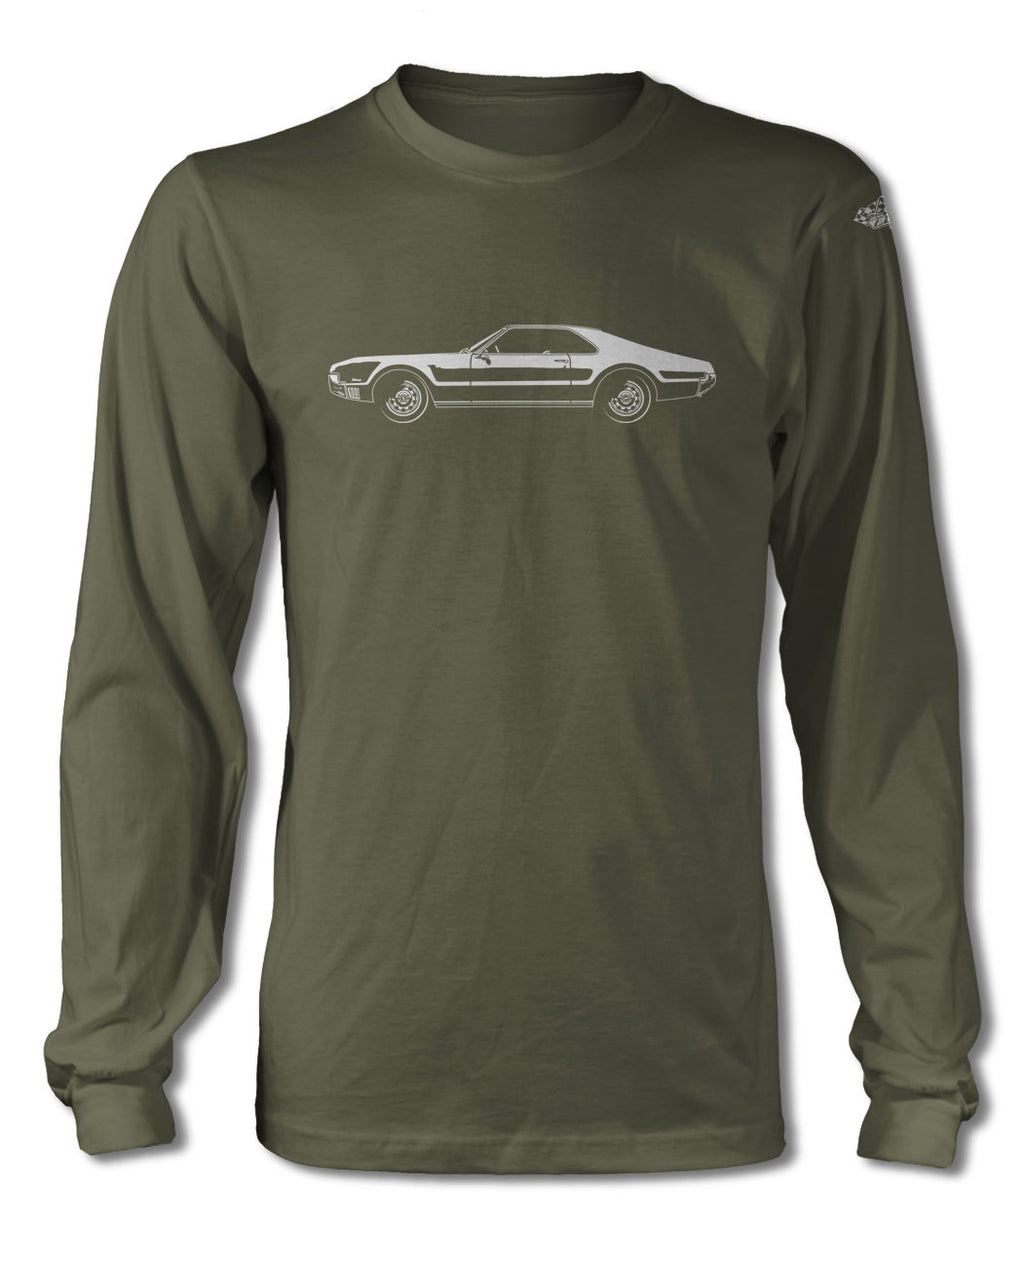 1966 Oldsmobile Toronado T-Shirt - Long Sleeves - Side View